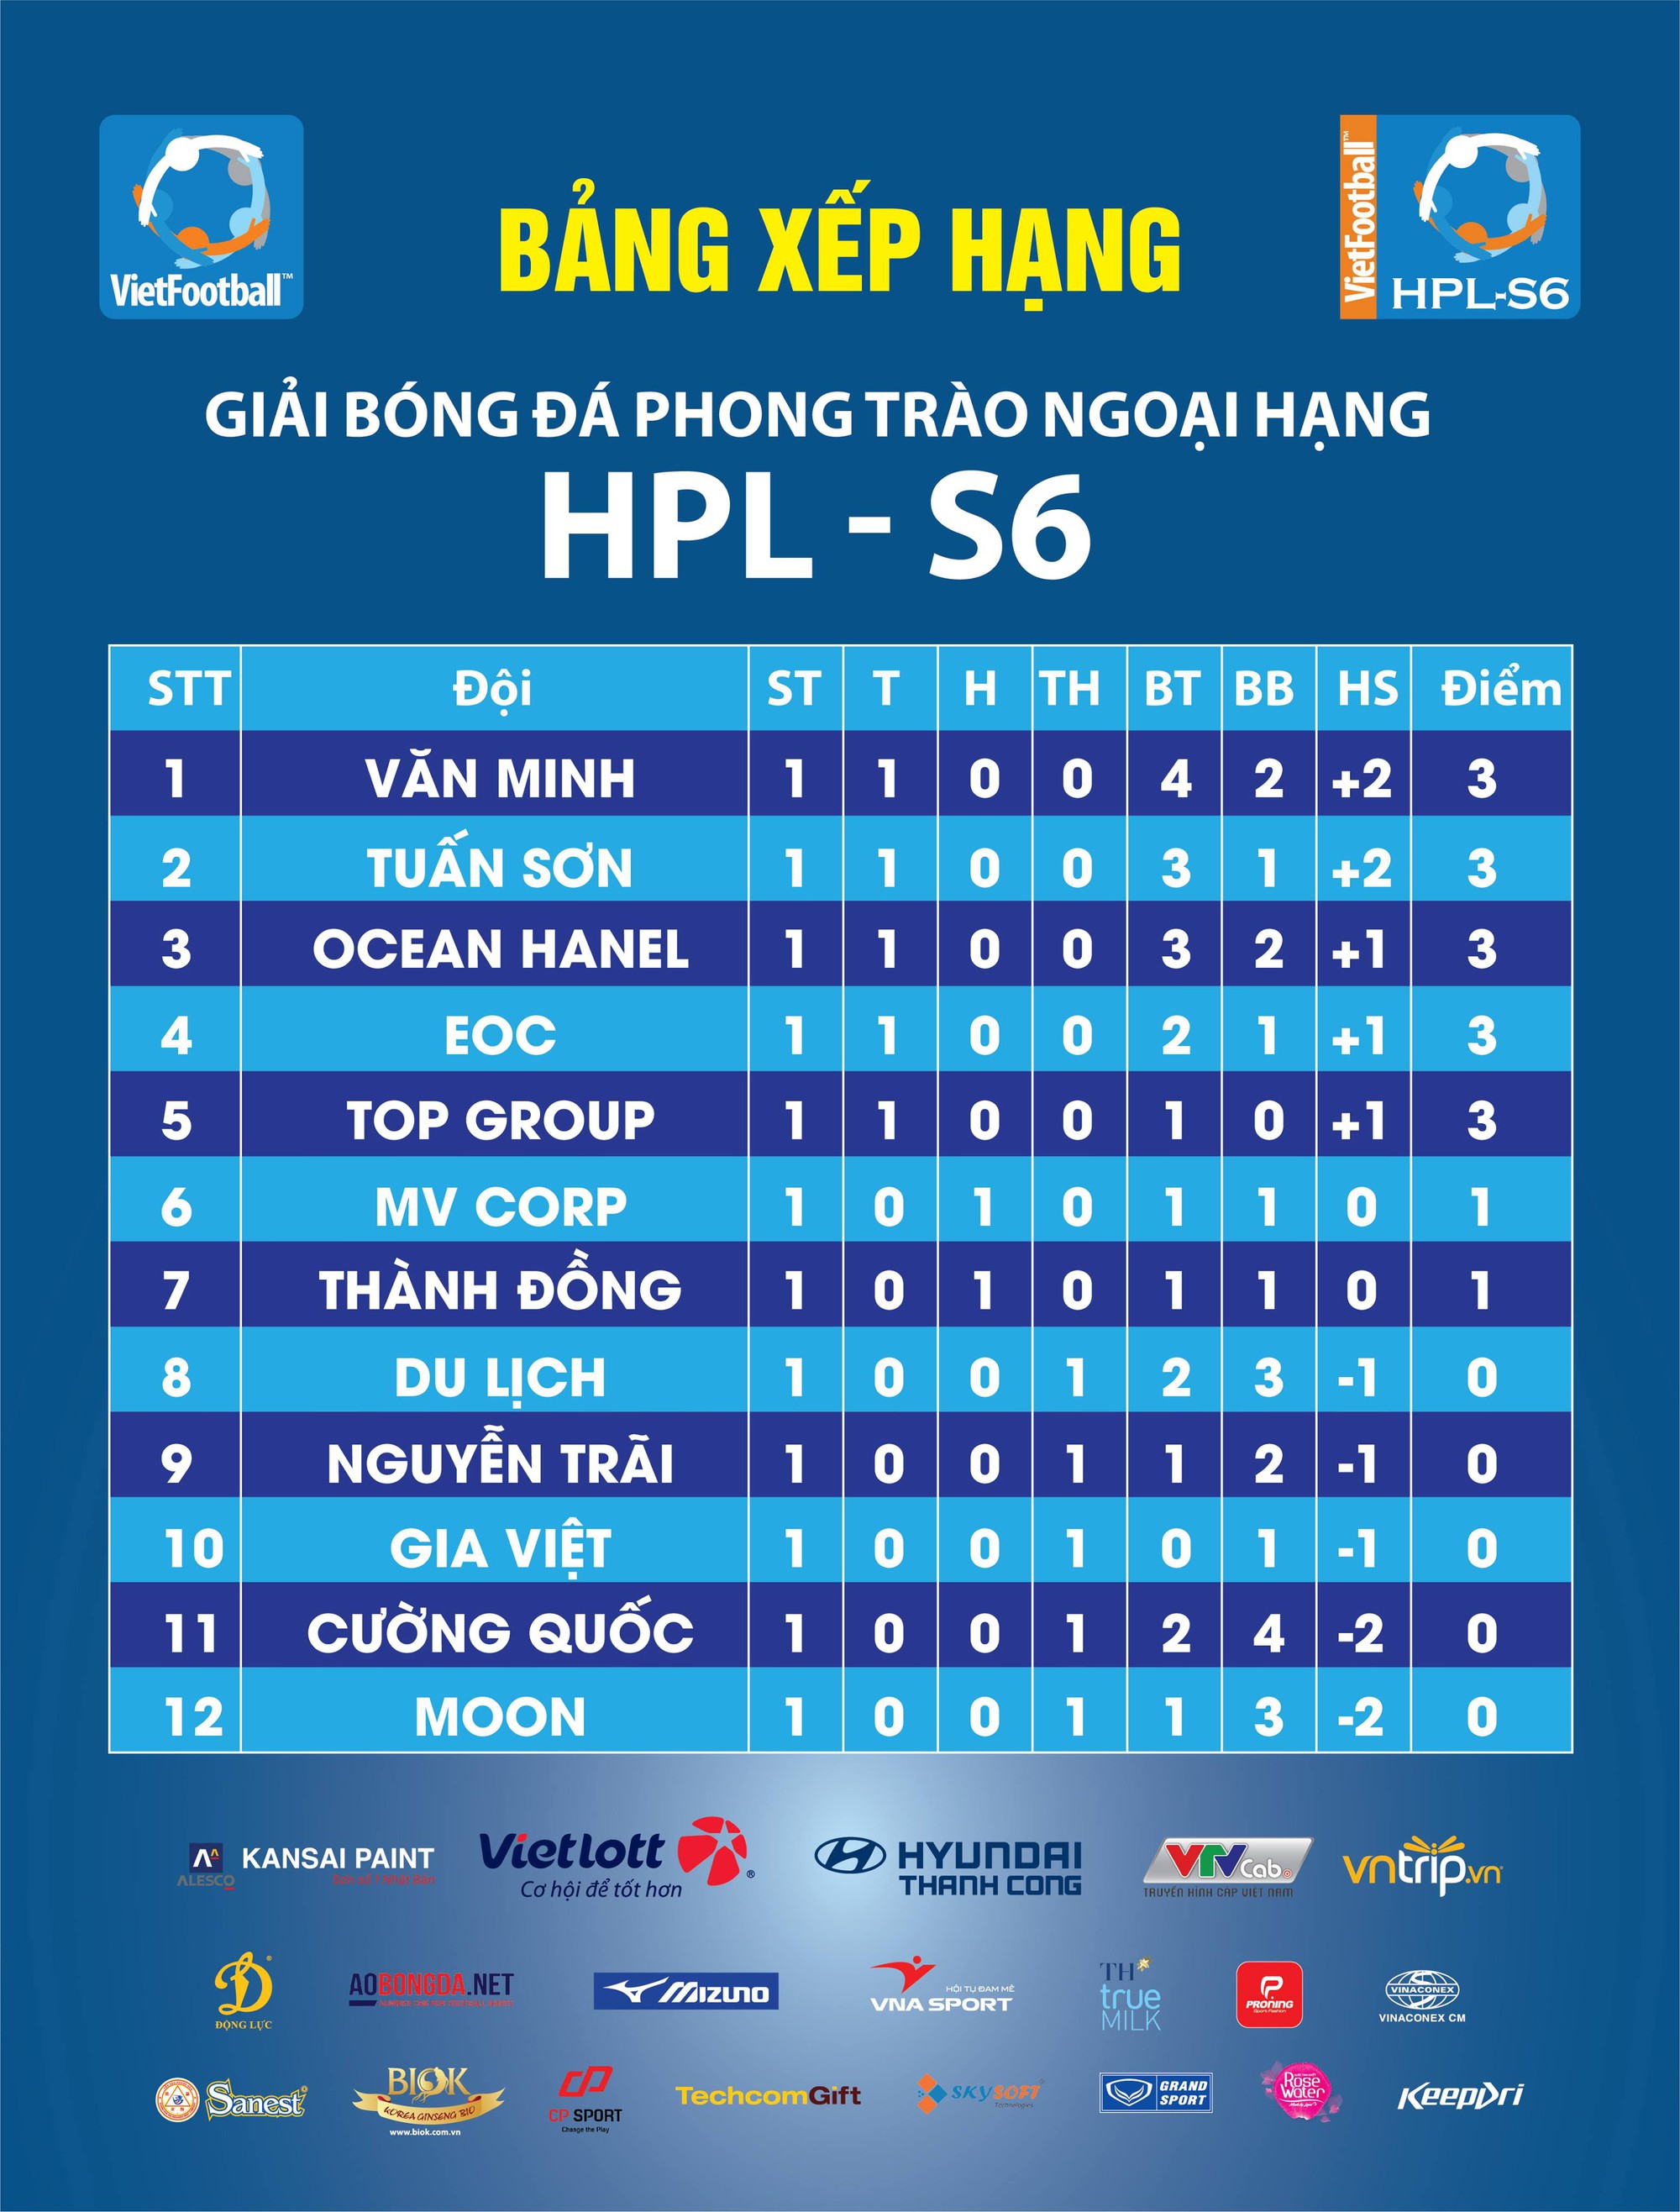 FC Văn Minh: Sự kết hợp giữa dân chuyên và sao phủi trong ngày khai màn HPL-S6 - Ảnh 4.